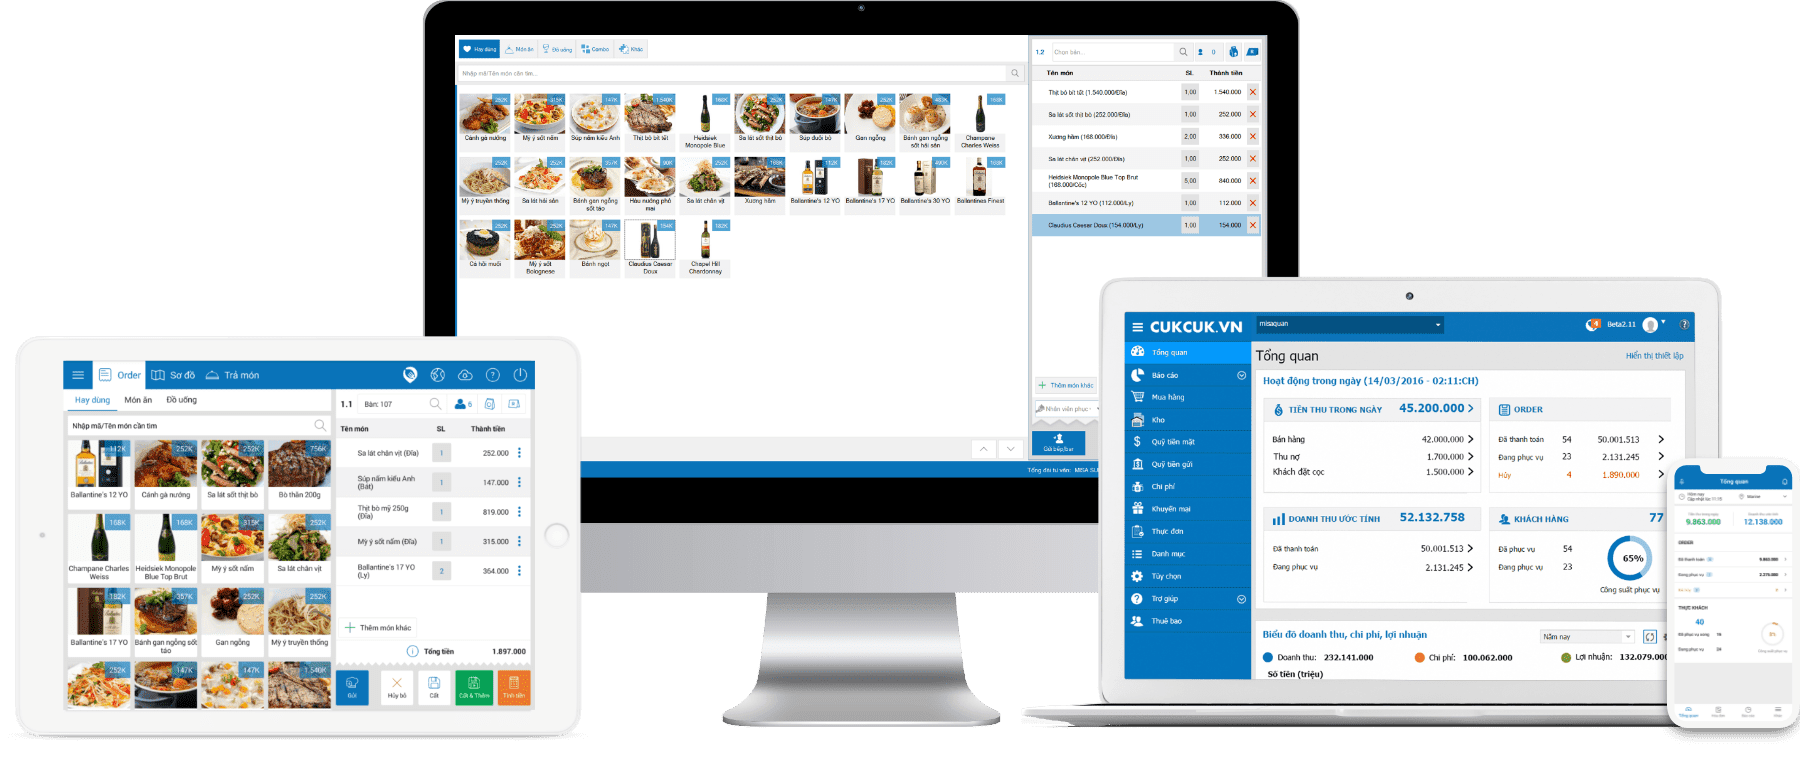 Phần mềm Cukcuk đầy đủ tính năng ưu việt đến nghiệp vụ bán hàng, quản lý - MISA